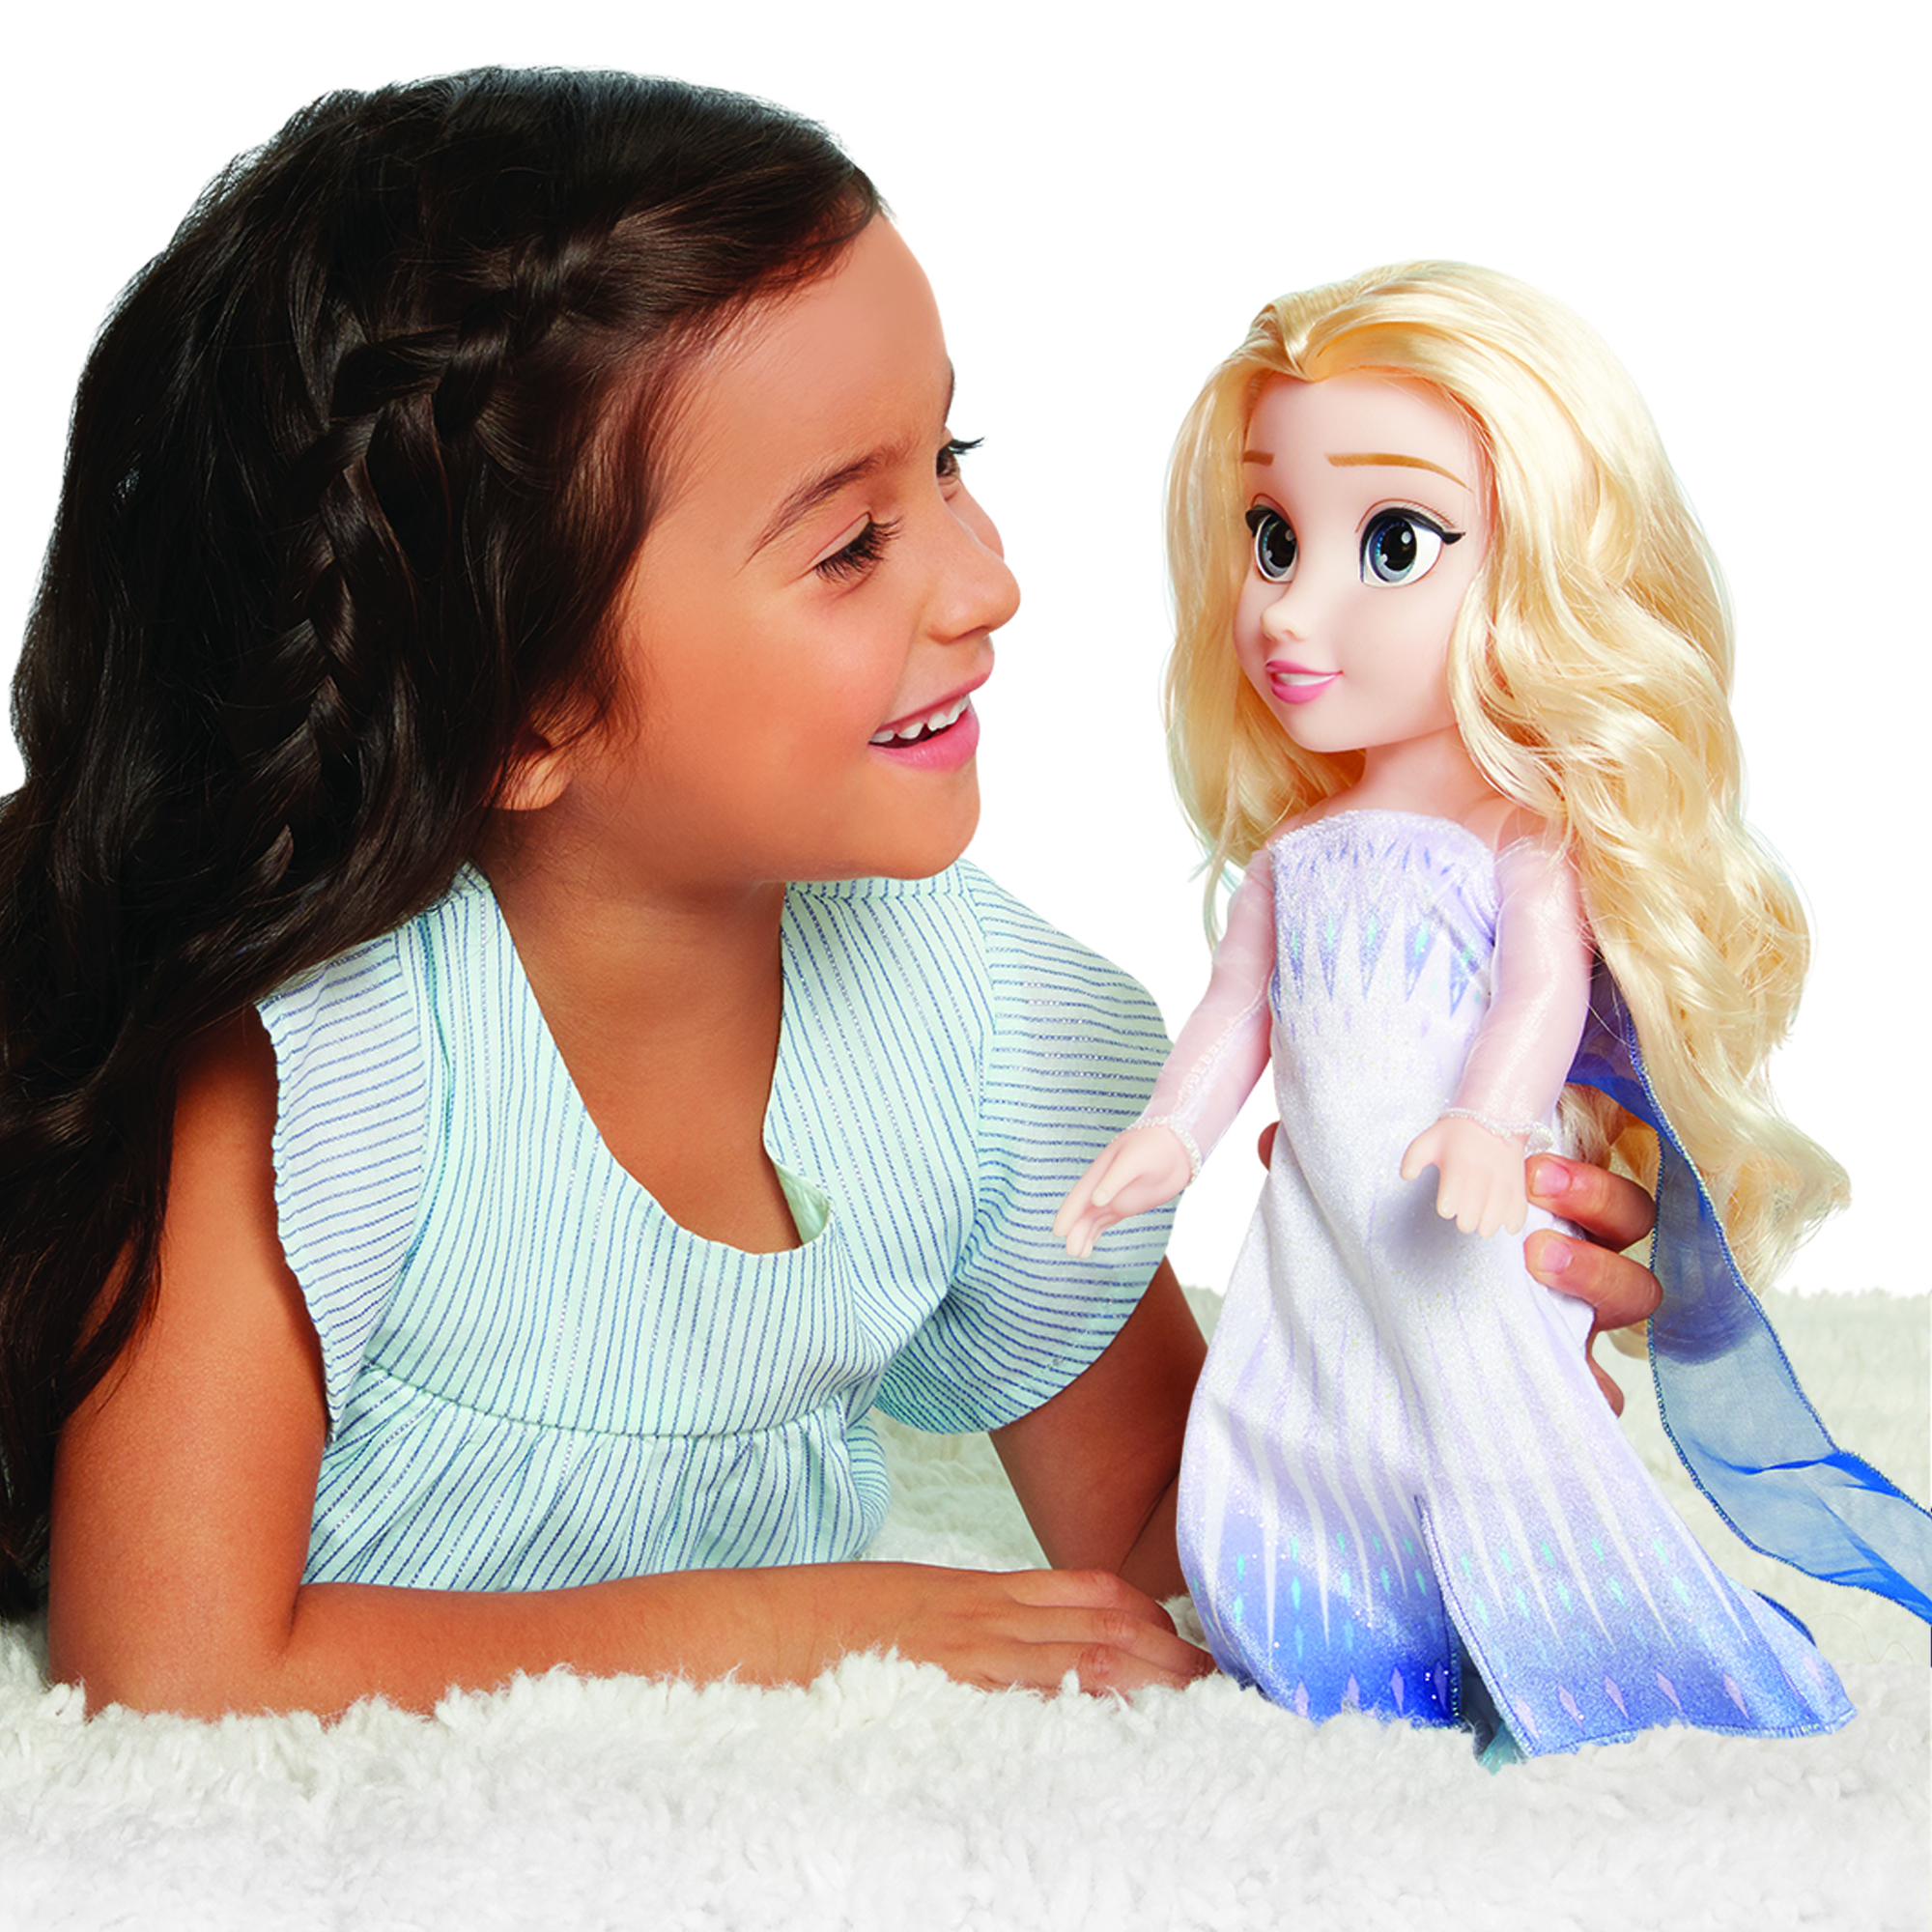 Disney Frozen 2 Elsa the Snow Queen 14" Doll - image 2 of 11